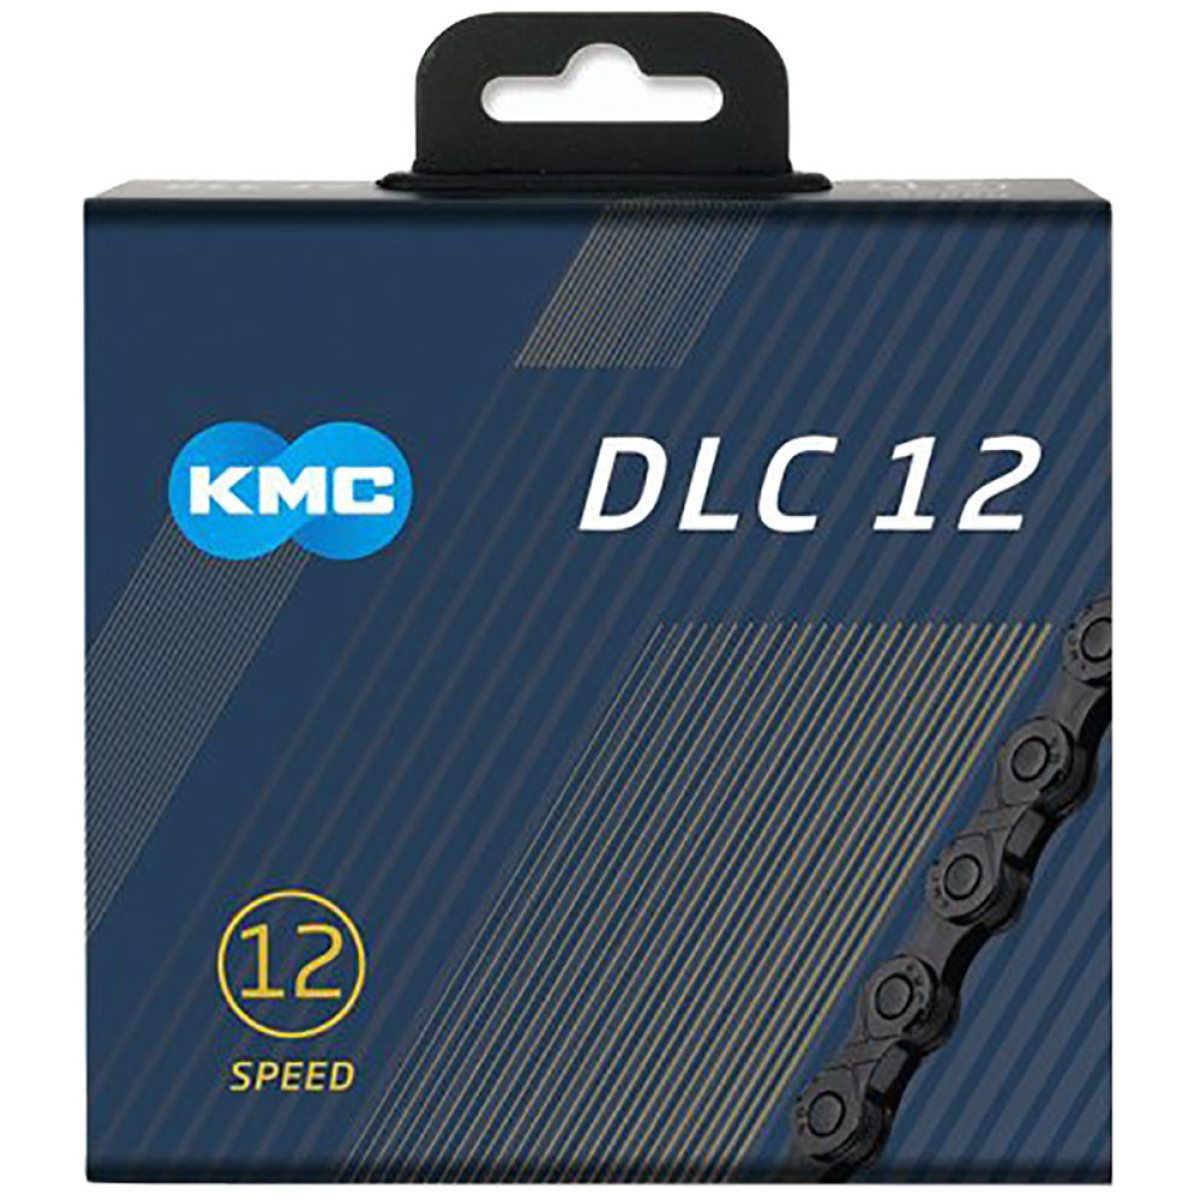 KMC DLC12 grandinė / 12 pavarų / Black 